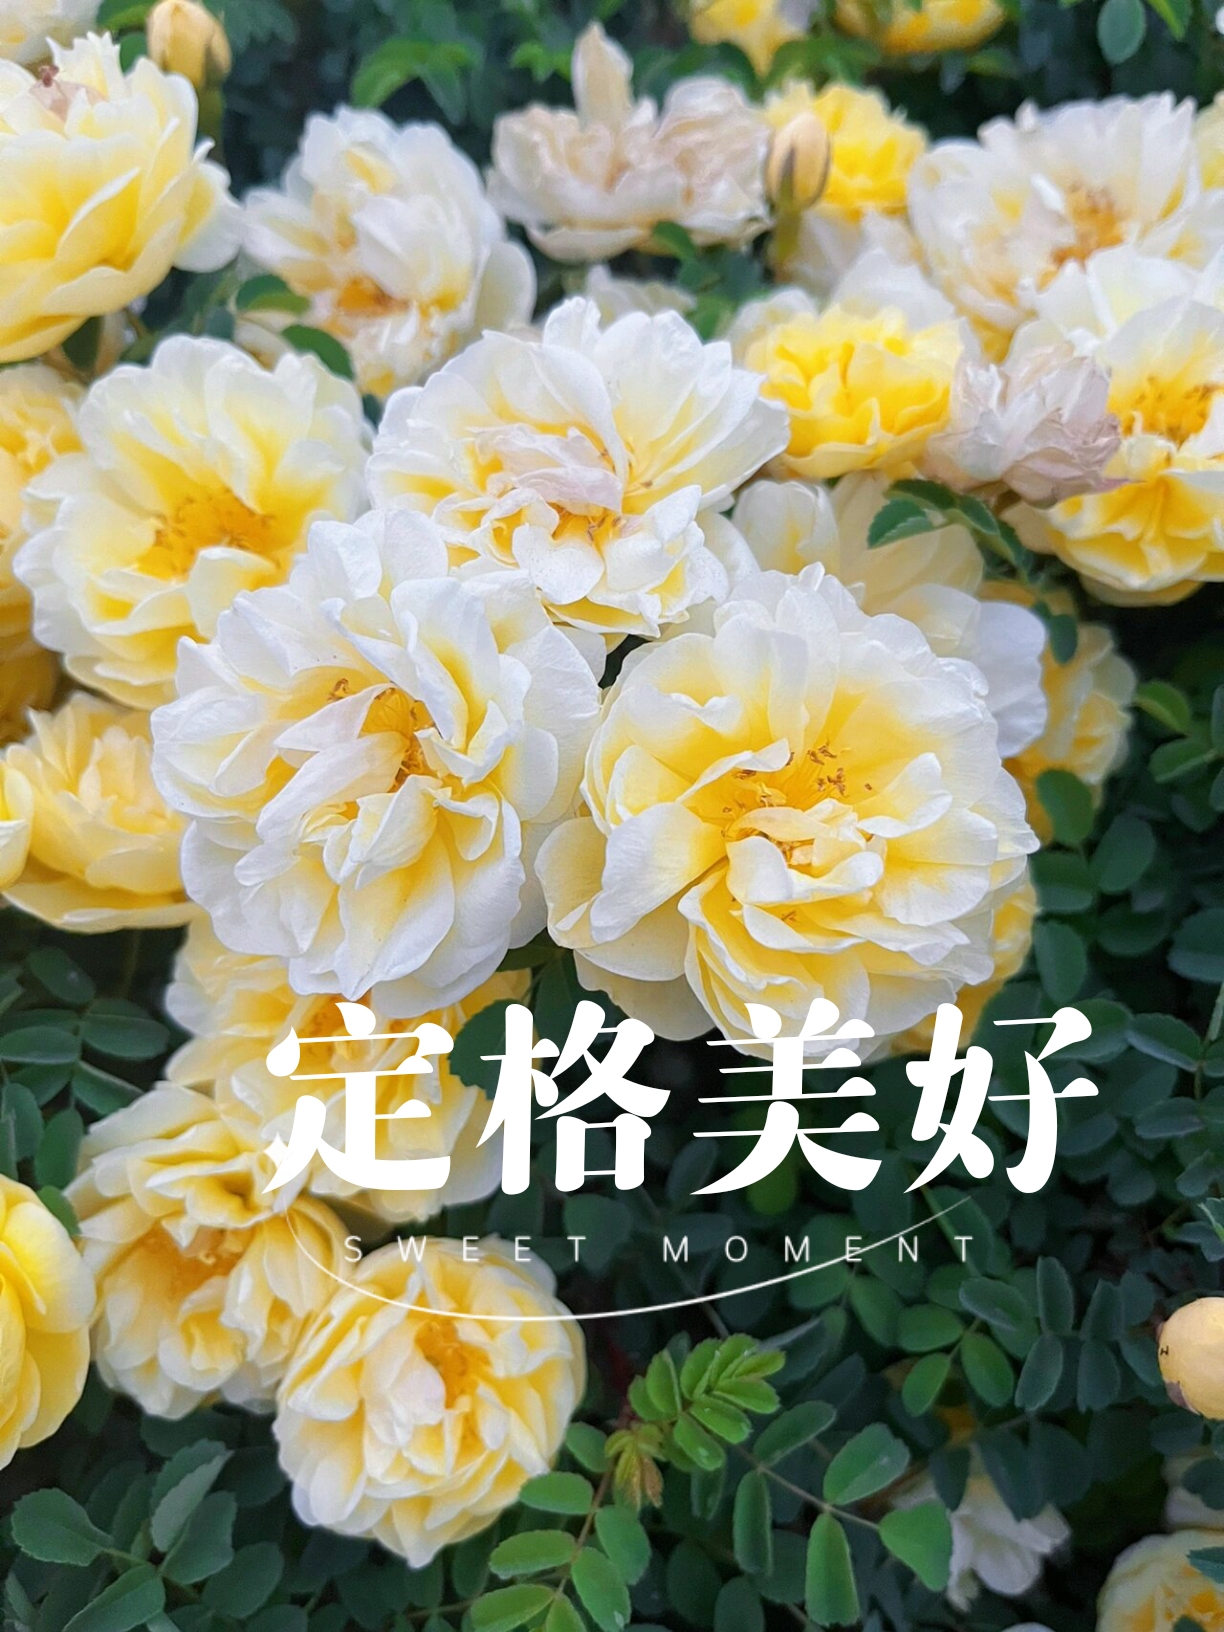 中国牡丹看菏泽   一起来赏花吧